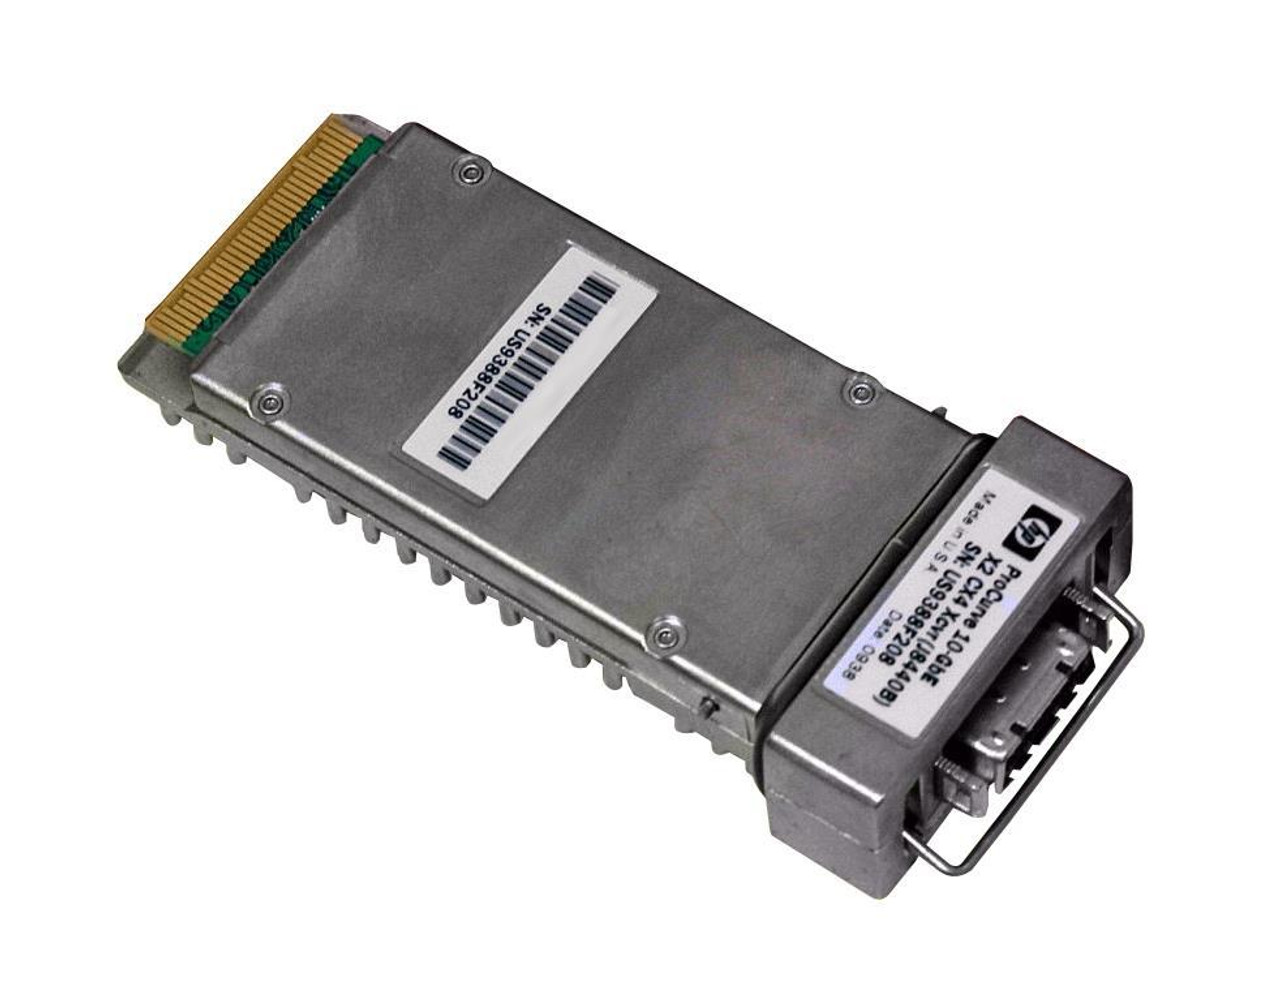 J8440BN HP ProCurve 10Gbps 10GBase-CX4 Copper 15m CX4 Connector X2 Transceiver Module